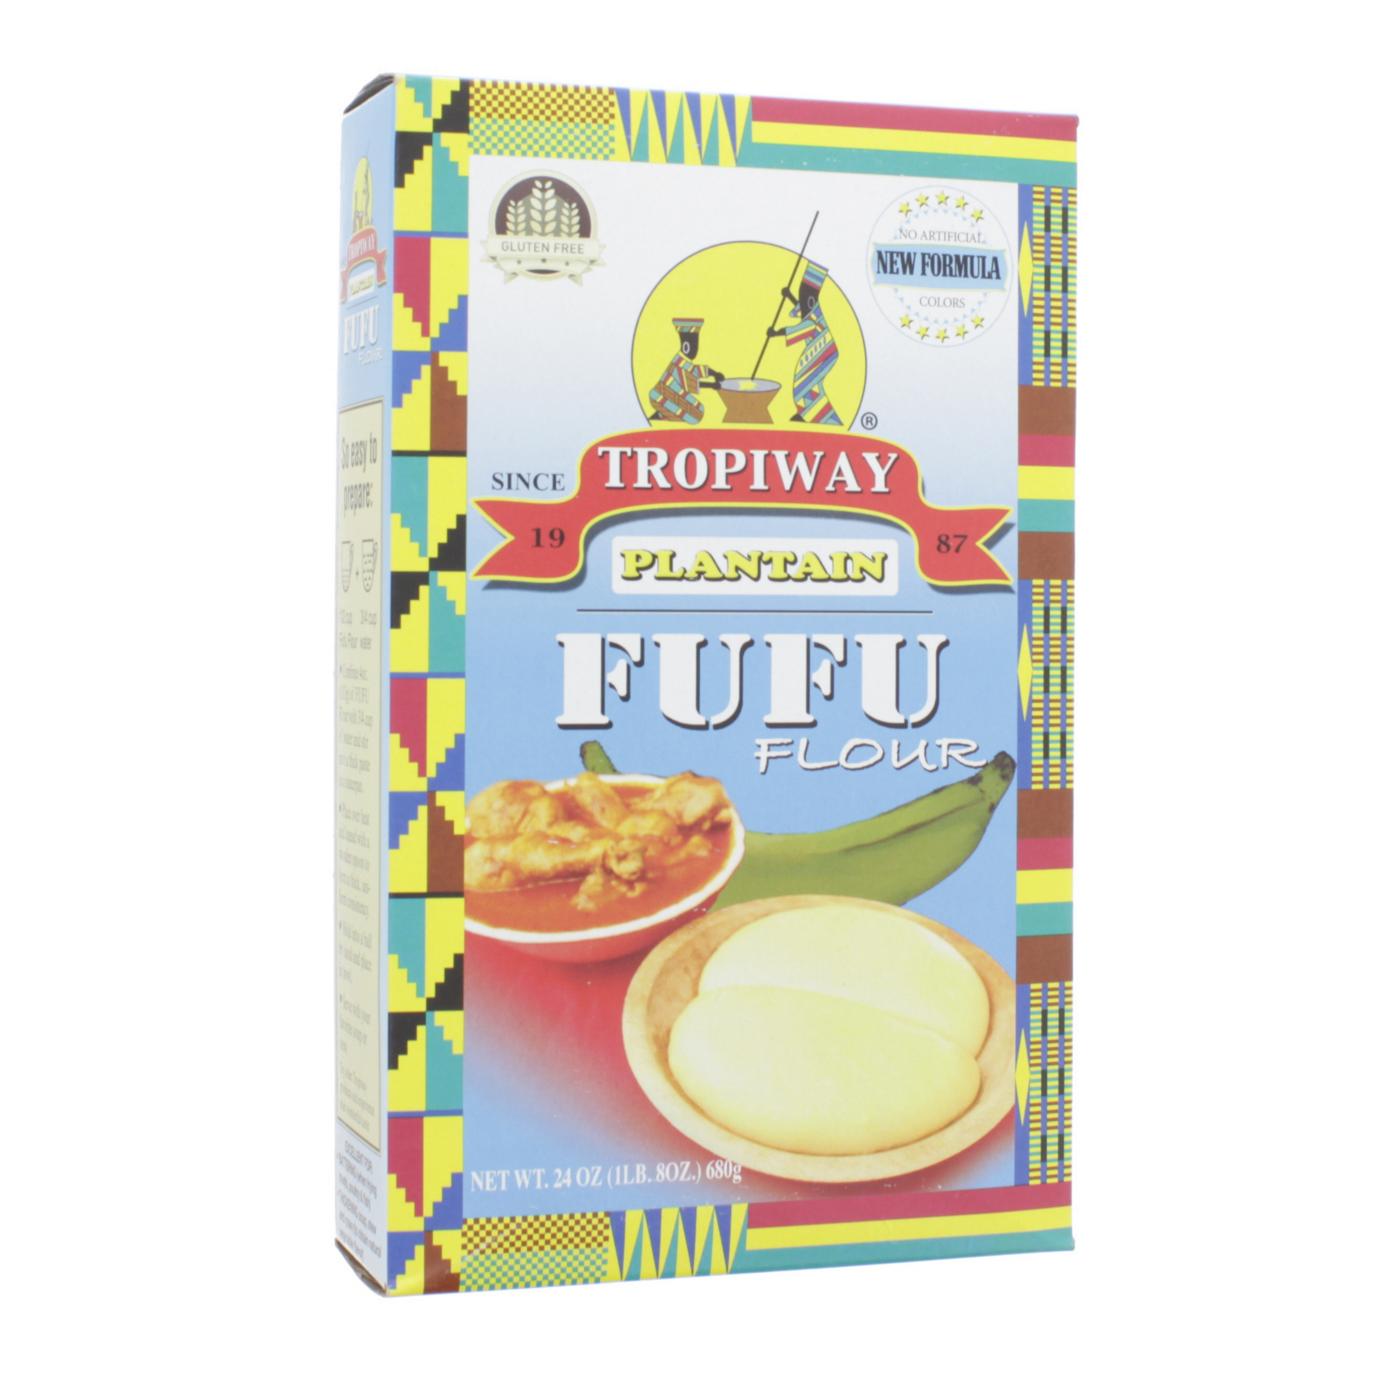 Tropiway Plantain Fufu Flour; image 1 of 2